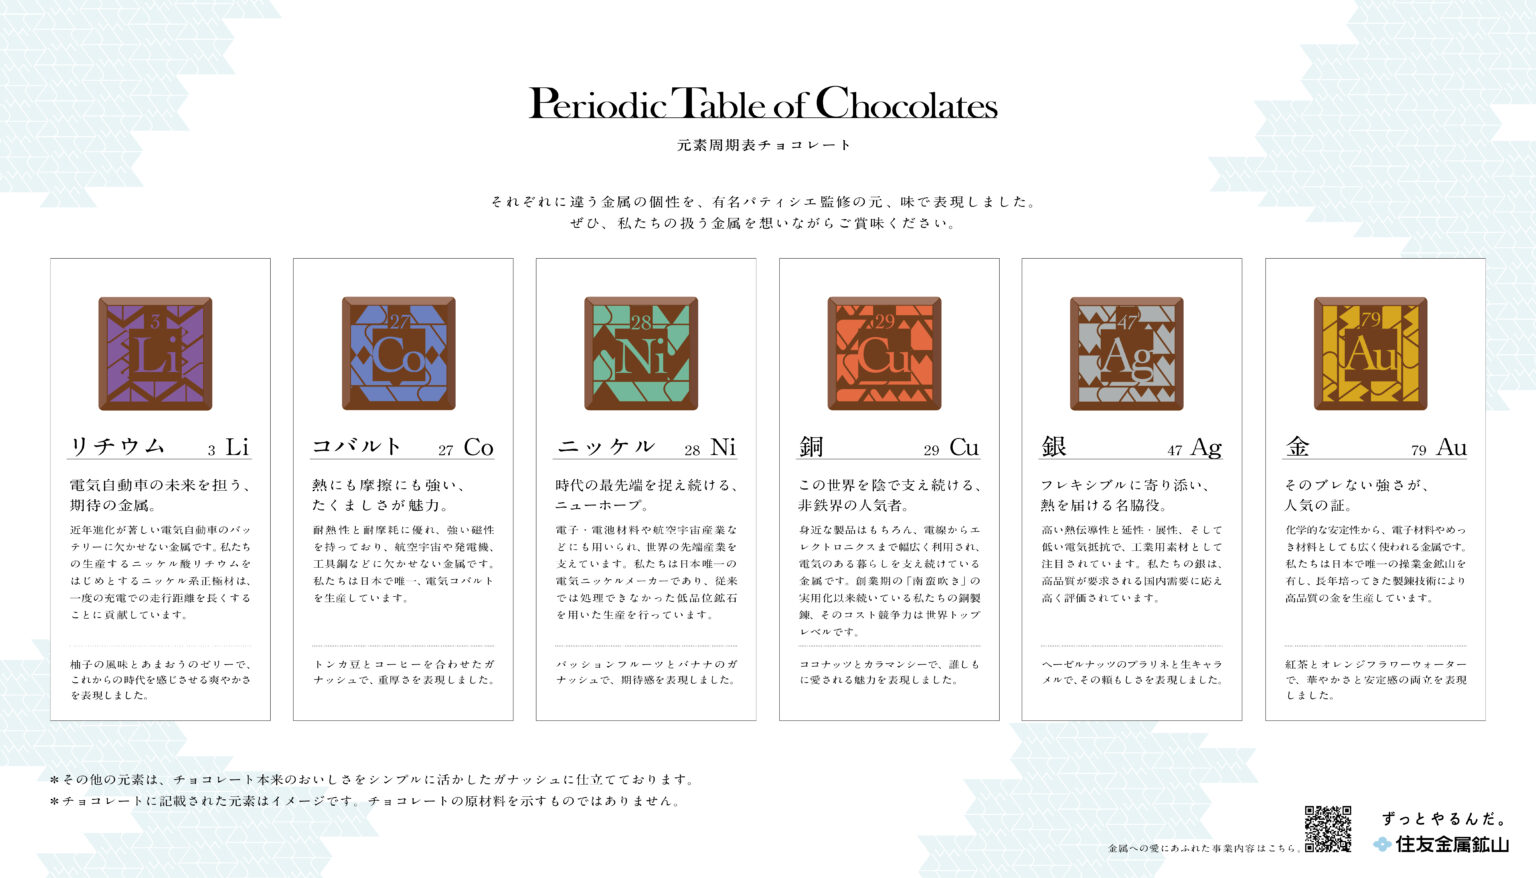 同封物①：「Periodic Table of Chocolates」のフレーバー紹介シート